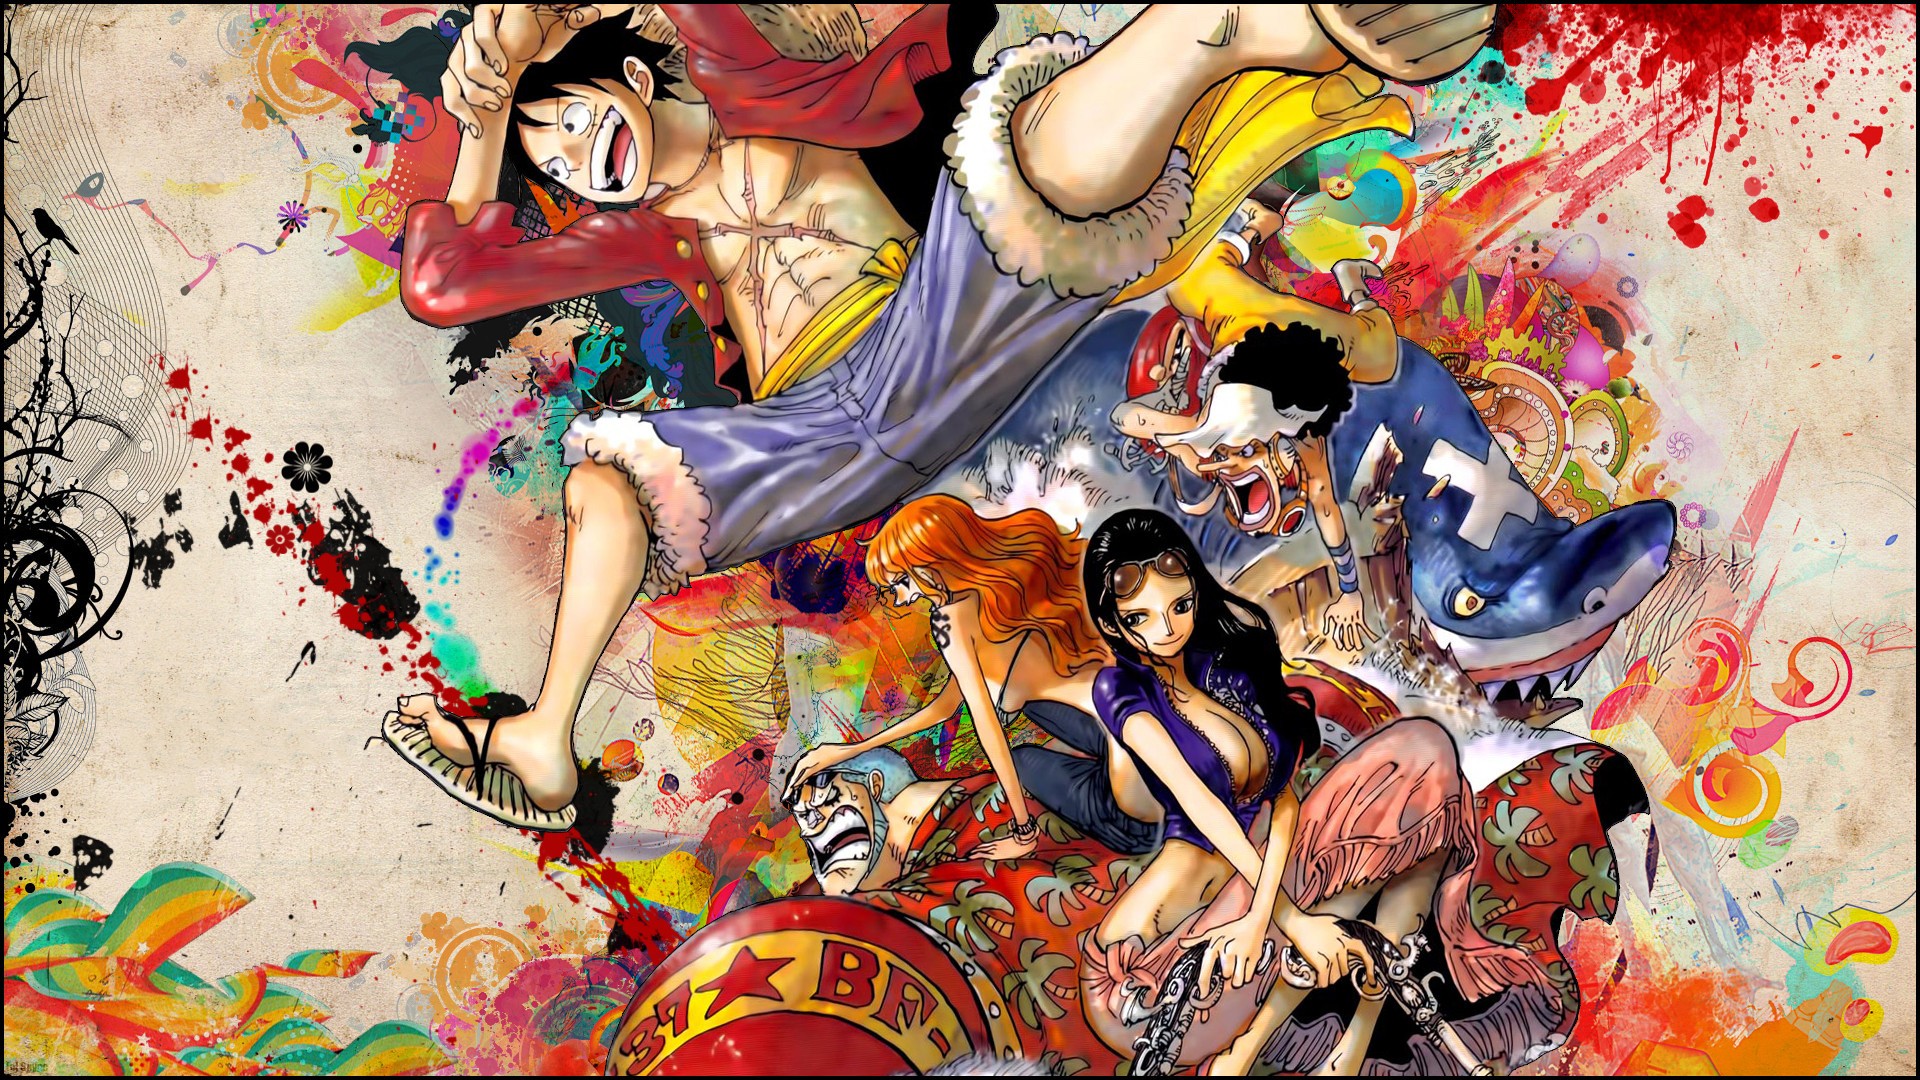 Với hình nền One Piece, hình ảnh Monkey D. Luffy, anime boys, anime girls, bạn sẽ bị mê hoặc bởi sự tự do, năng lượng và độc đáo của anime này. Khám phá đội hình anime phong phú của One Piece và cùng chia sẻ tình yêu với những người hâm mộ trên toàn thế giới.